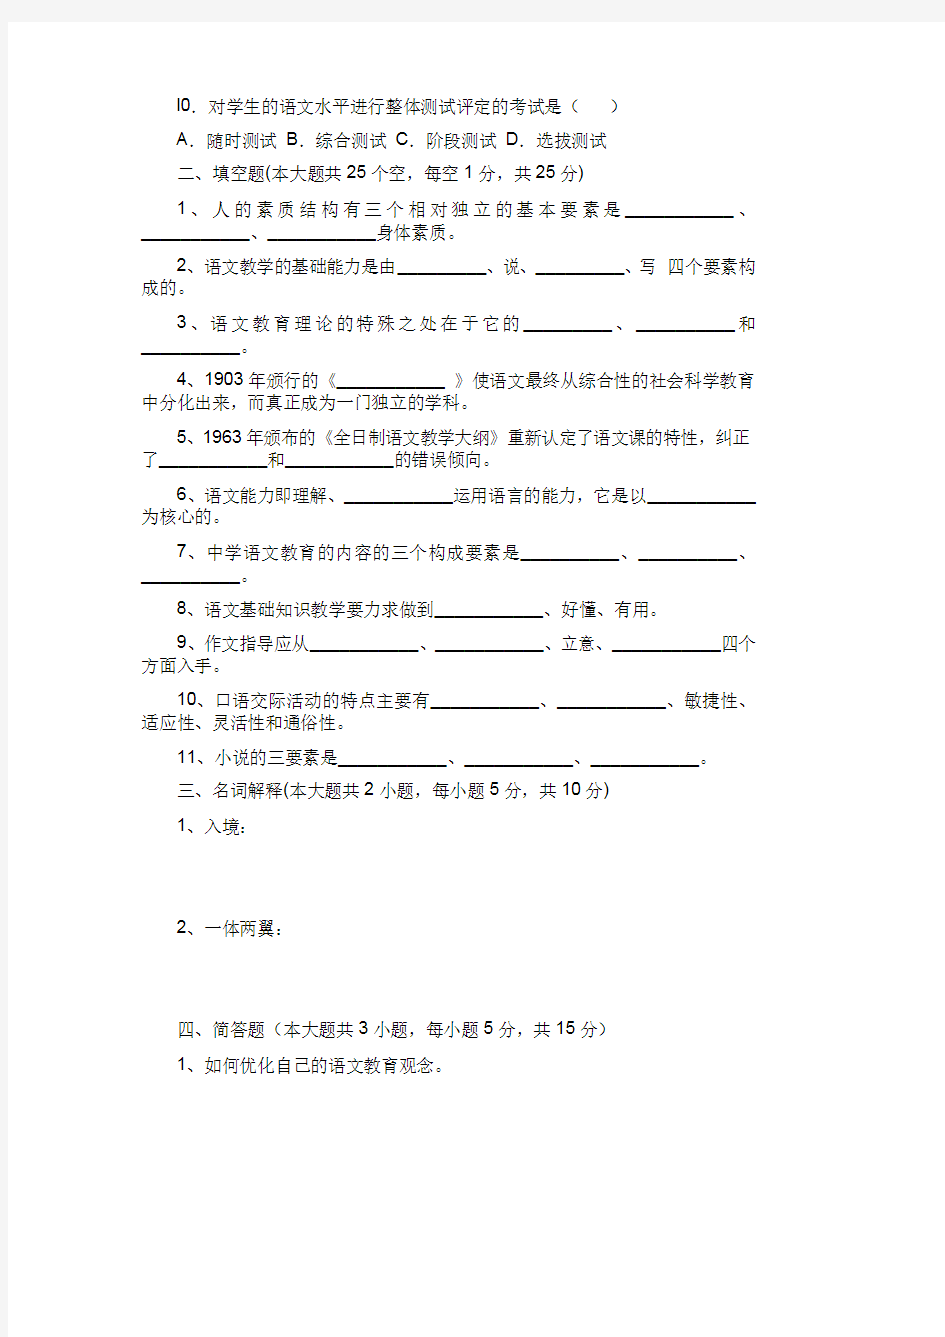 中学语文职称考试模拟试题及答案(三套)